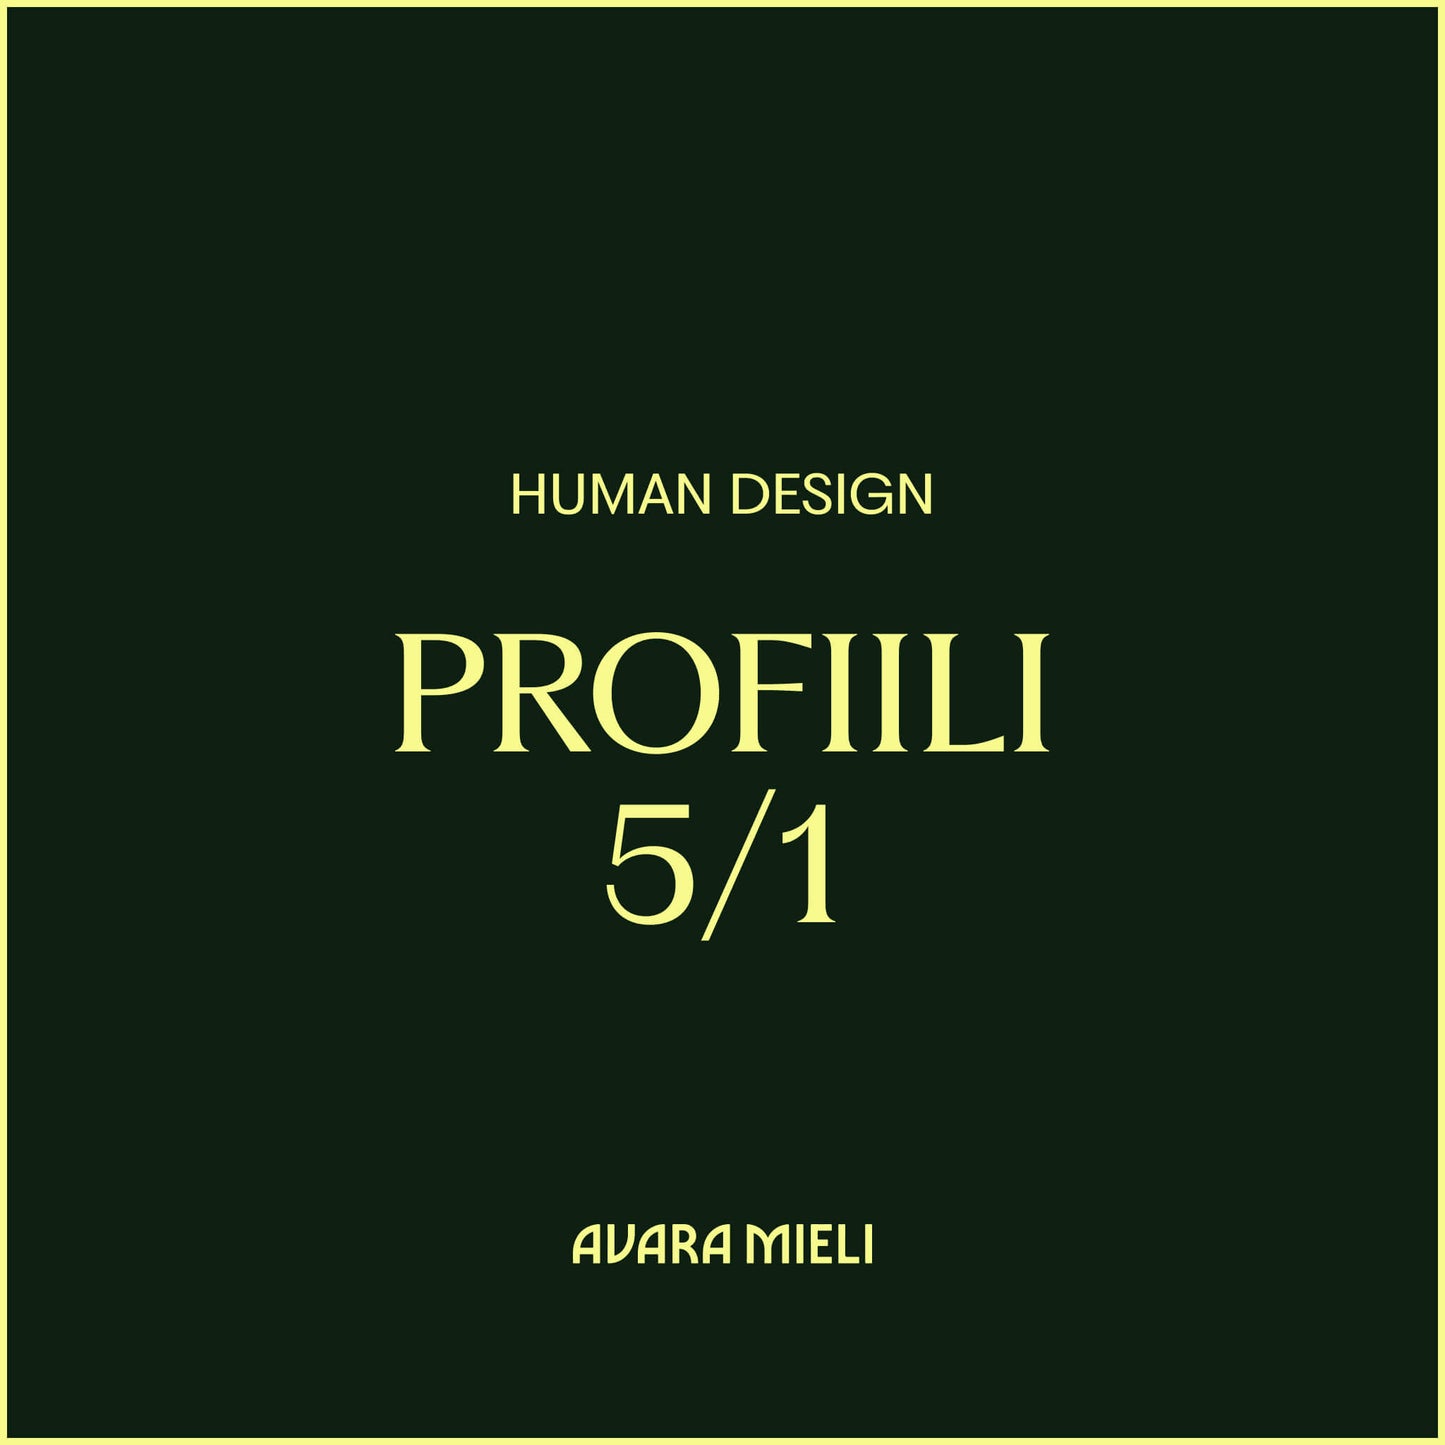 Human Design Profiili 5/1